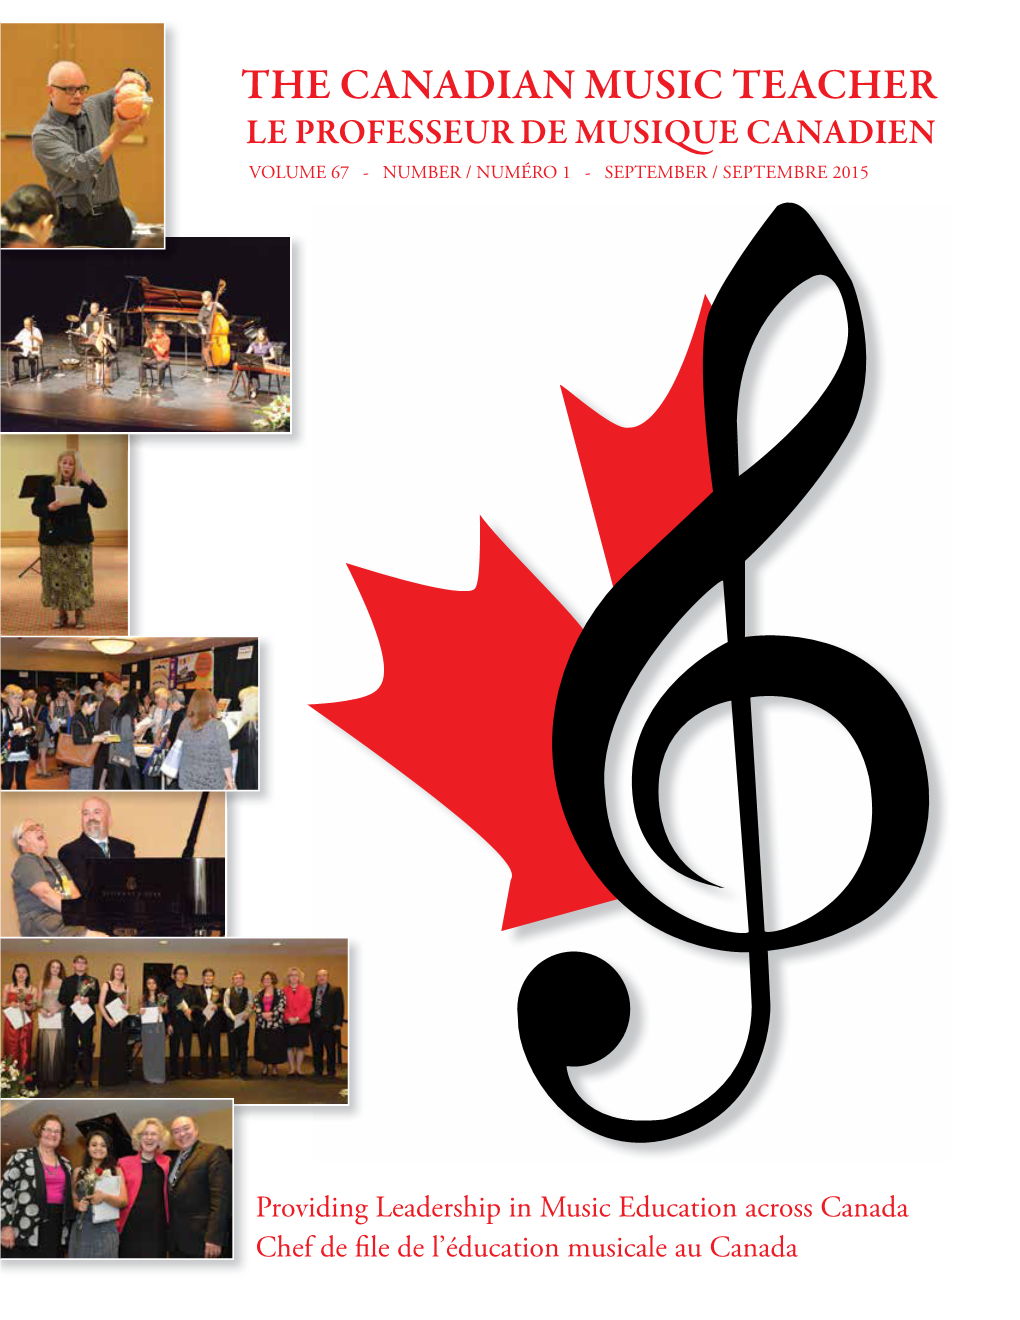 The Canadian Music Teacher Le Professeur De Musi Ue Canadien Volume 67 - Number / Numéro 1 - September / Septembre 2015